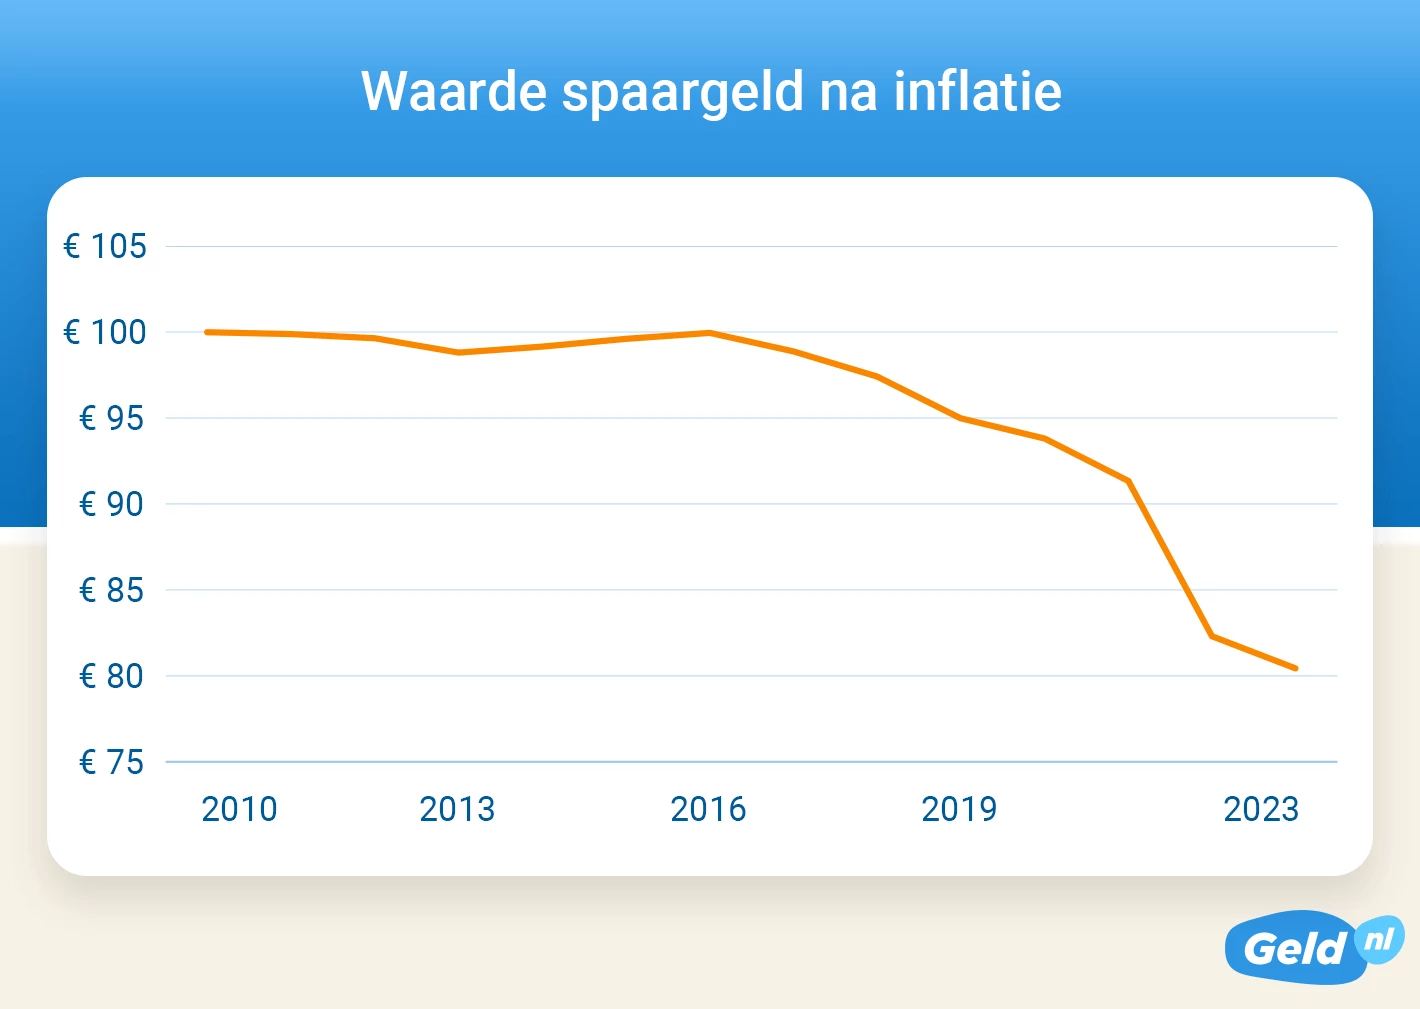 waarde spaargeld na inflatie van 2010 tot en met 2023